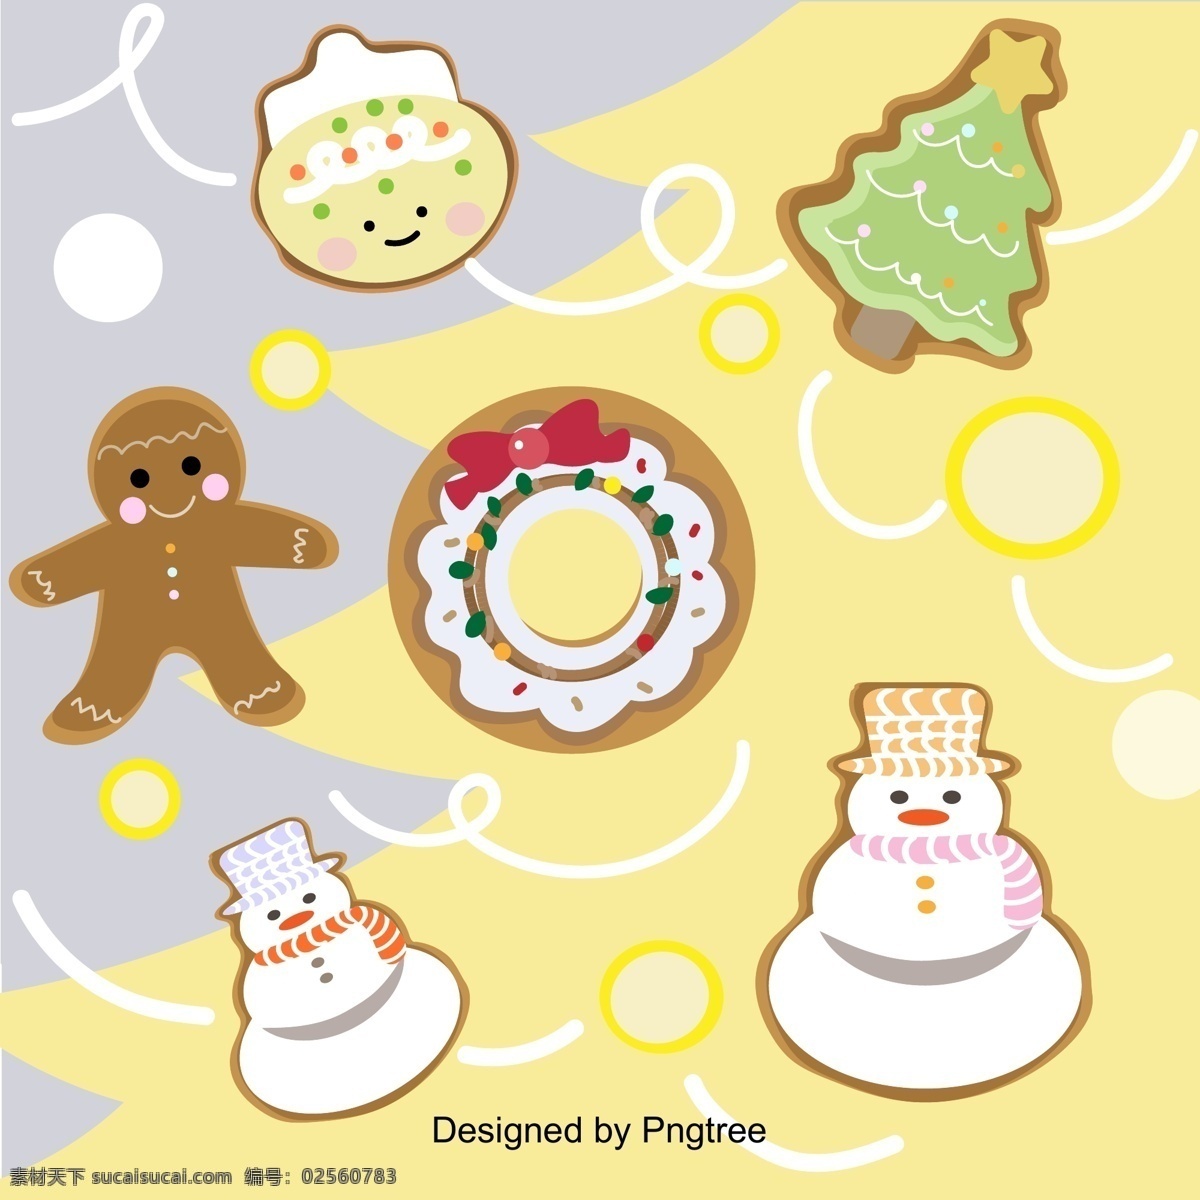 一个 强壮 男人 圣诞 雪人 墙纸 布朗 饼干 背景 圣诞节 咖啡 地球 颜色 甜甜 圈